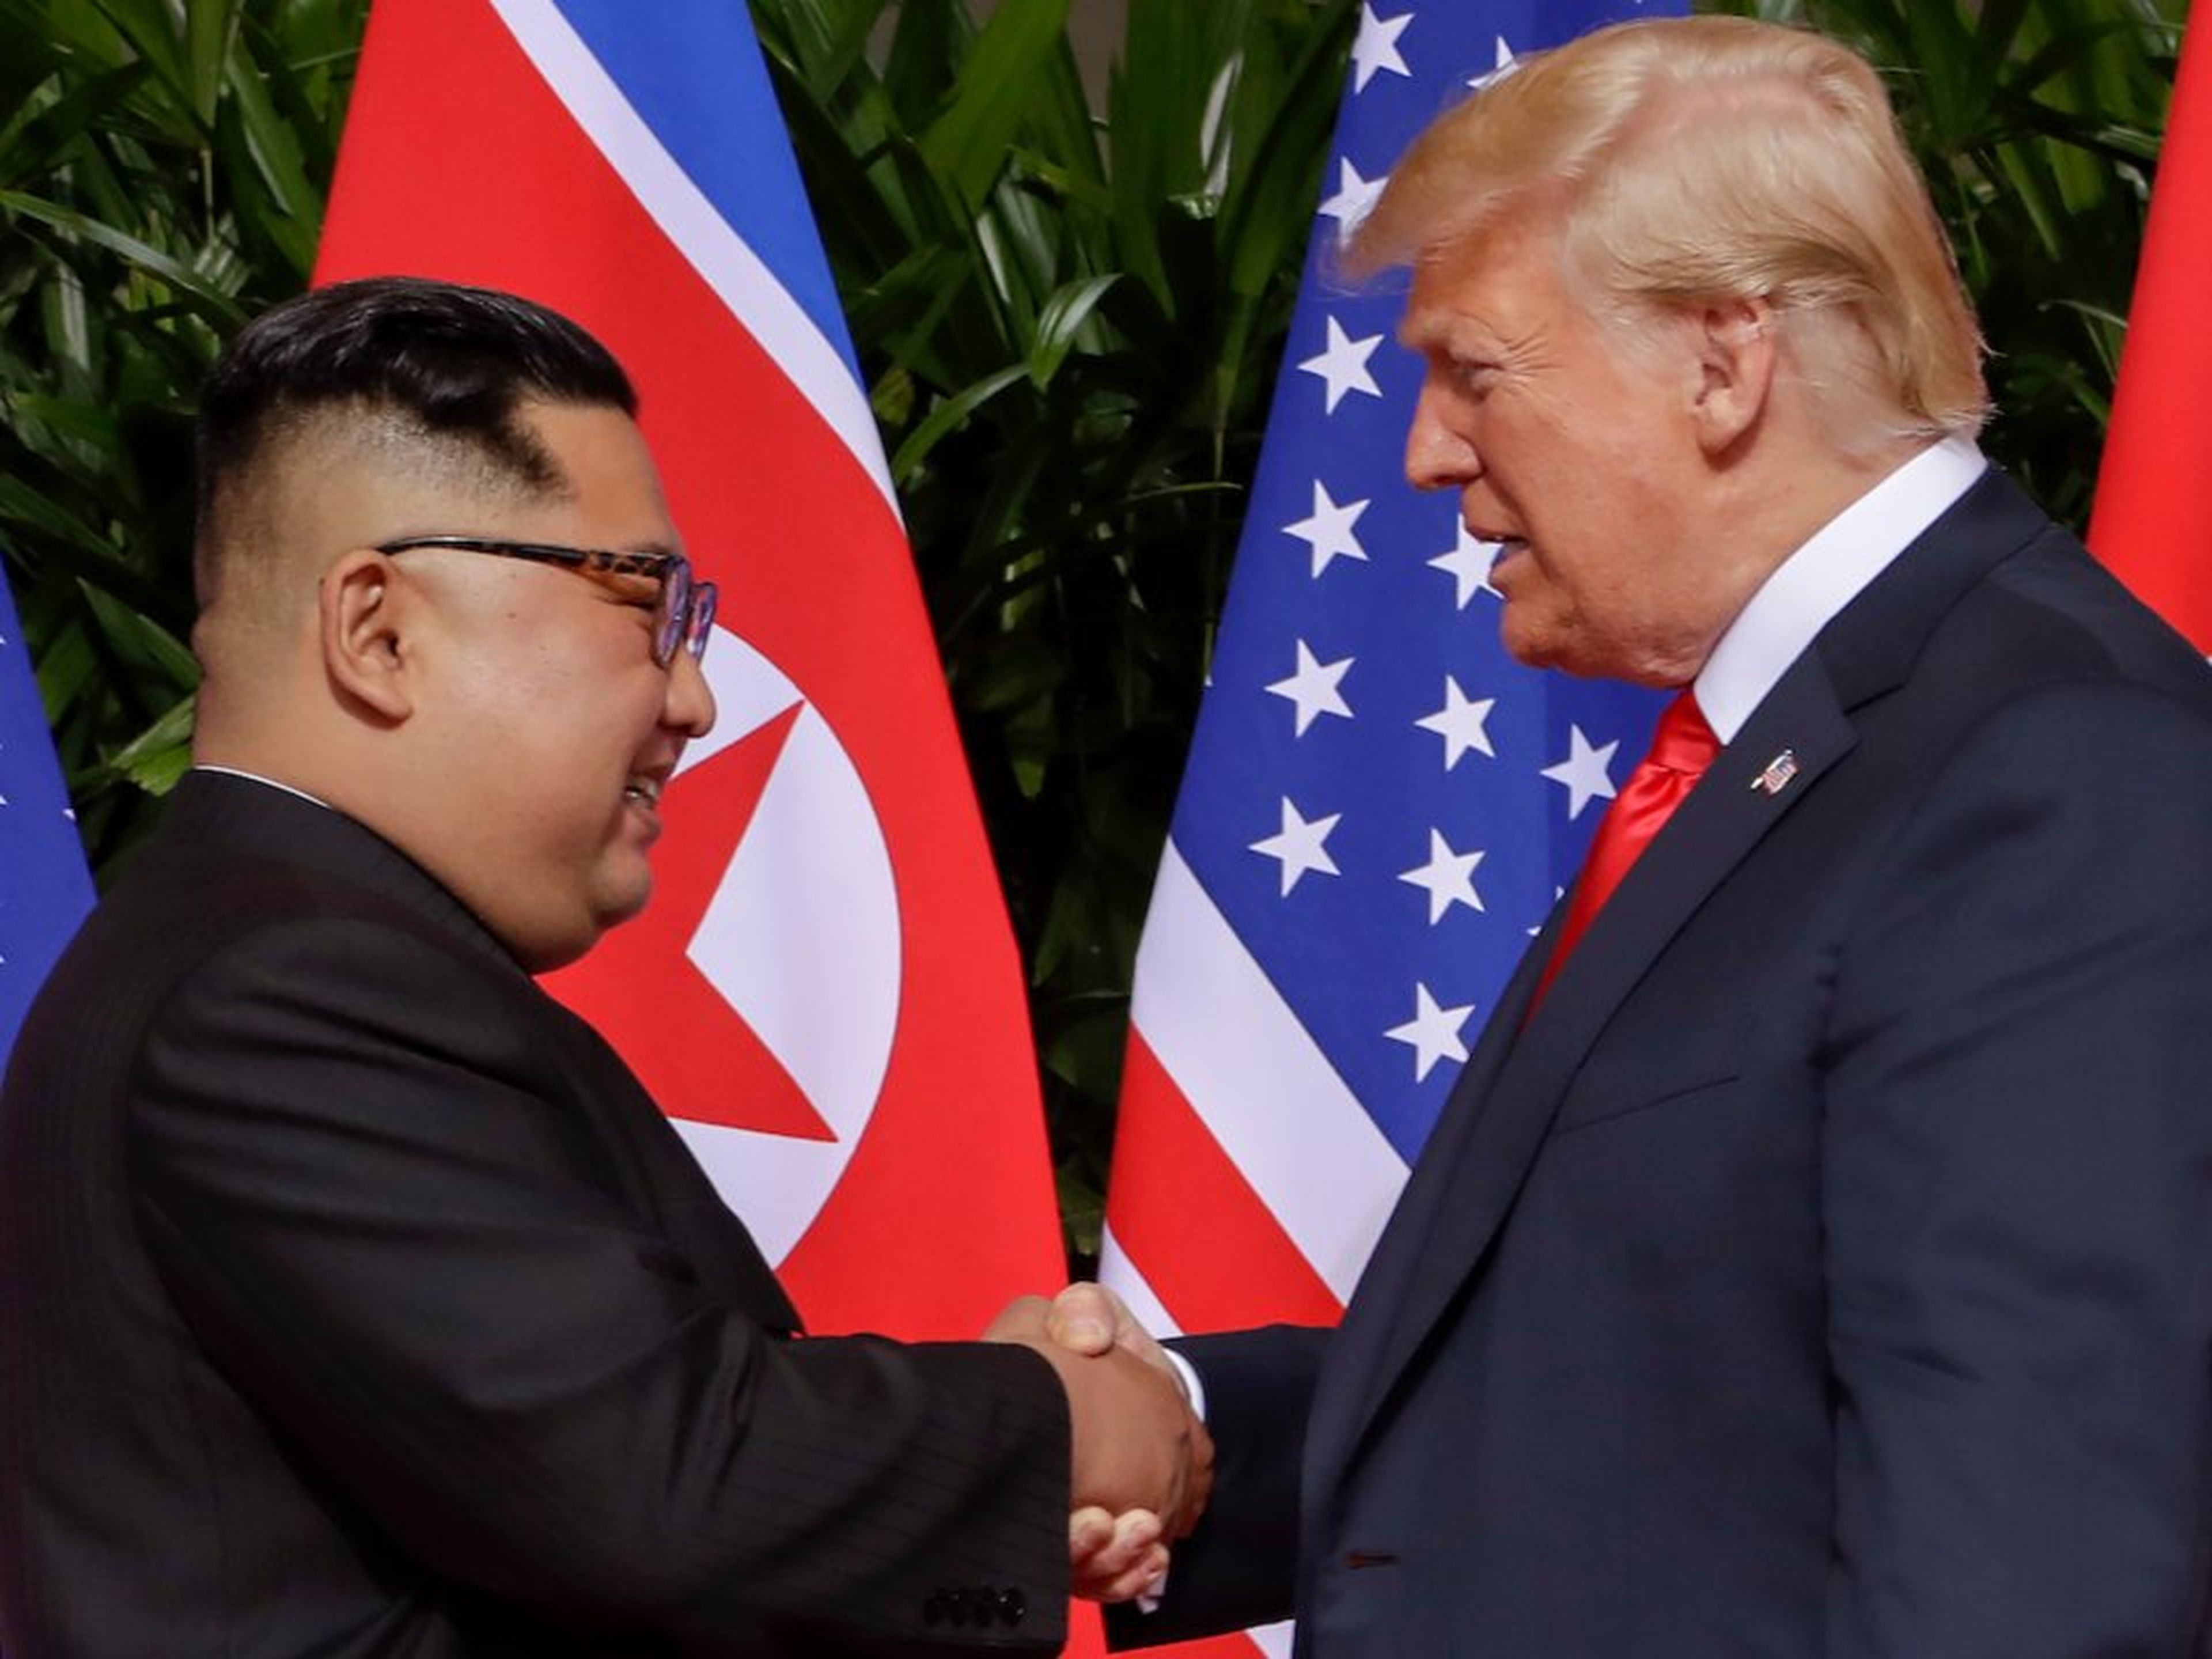 El presidente Donald Trump estrecha la mano del líder norcoreano Kim Jong Un en el complejo Capella en la isla Sentosa, el 12 de junio de 2018 en Singapur.